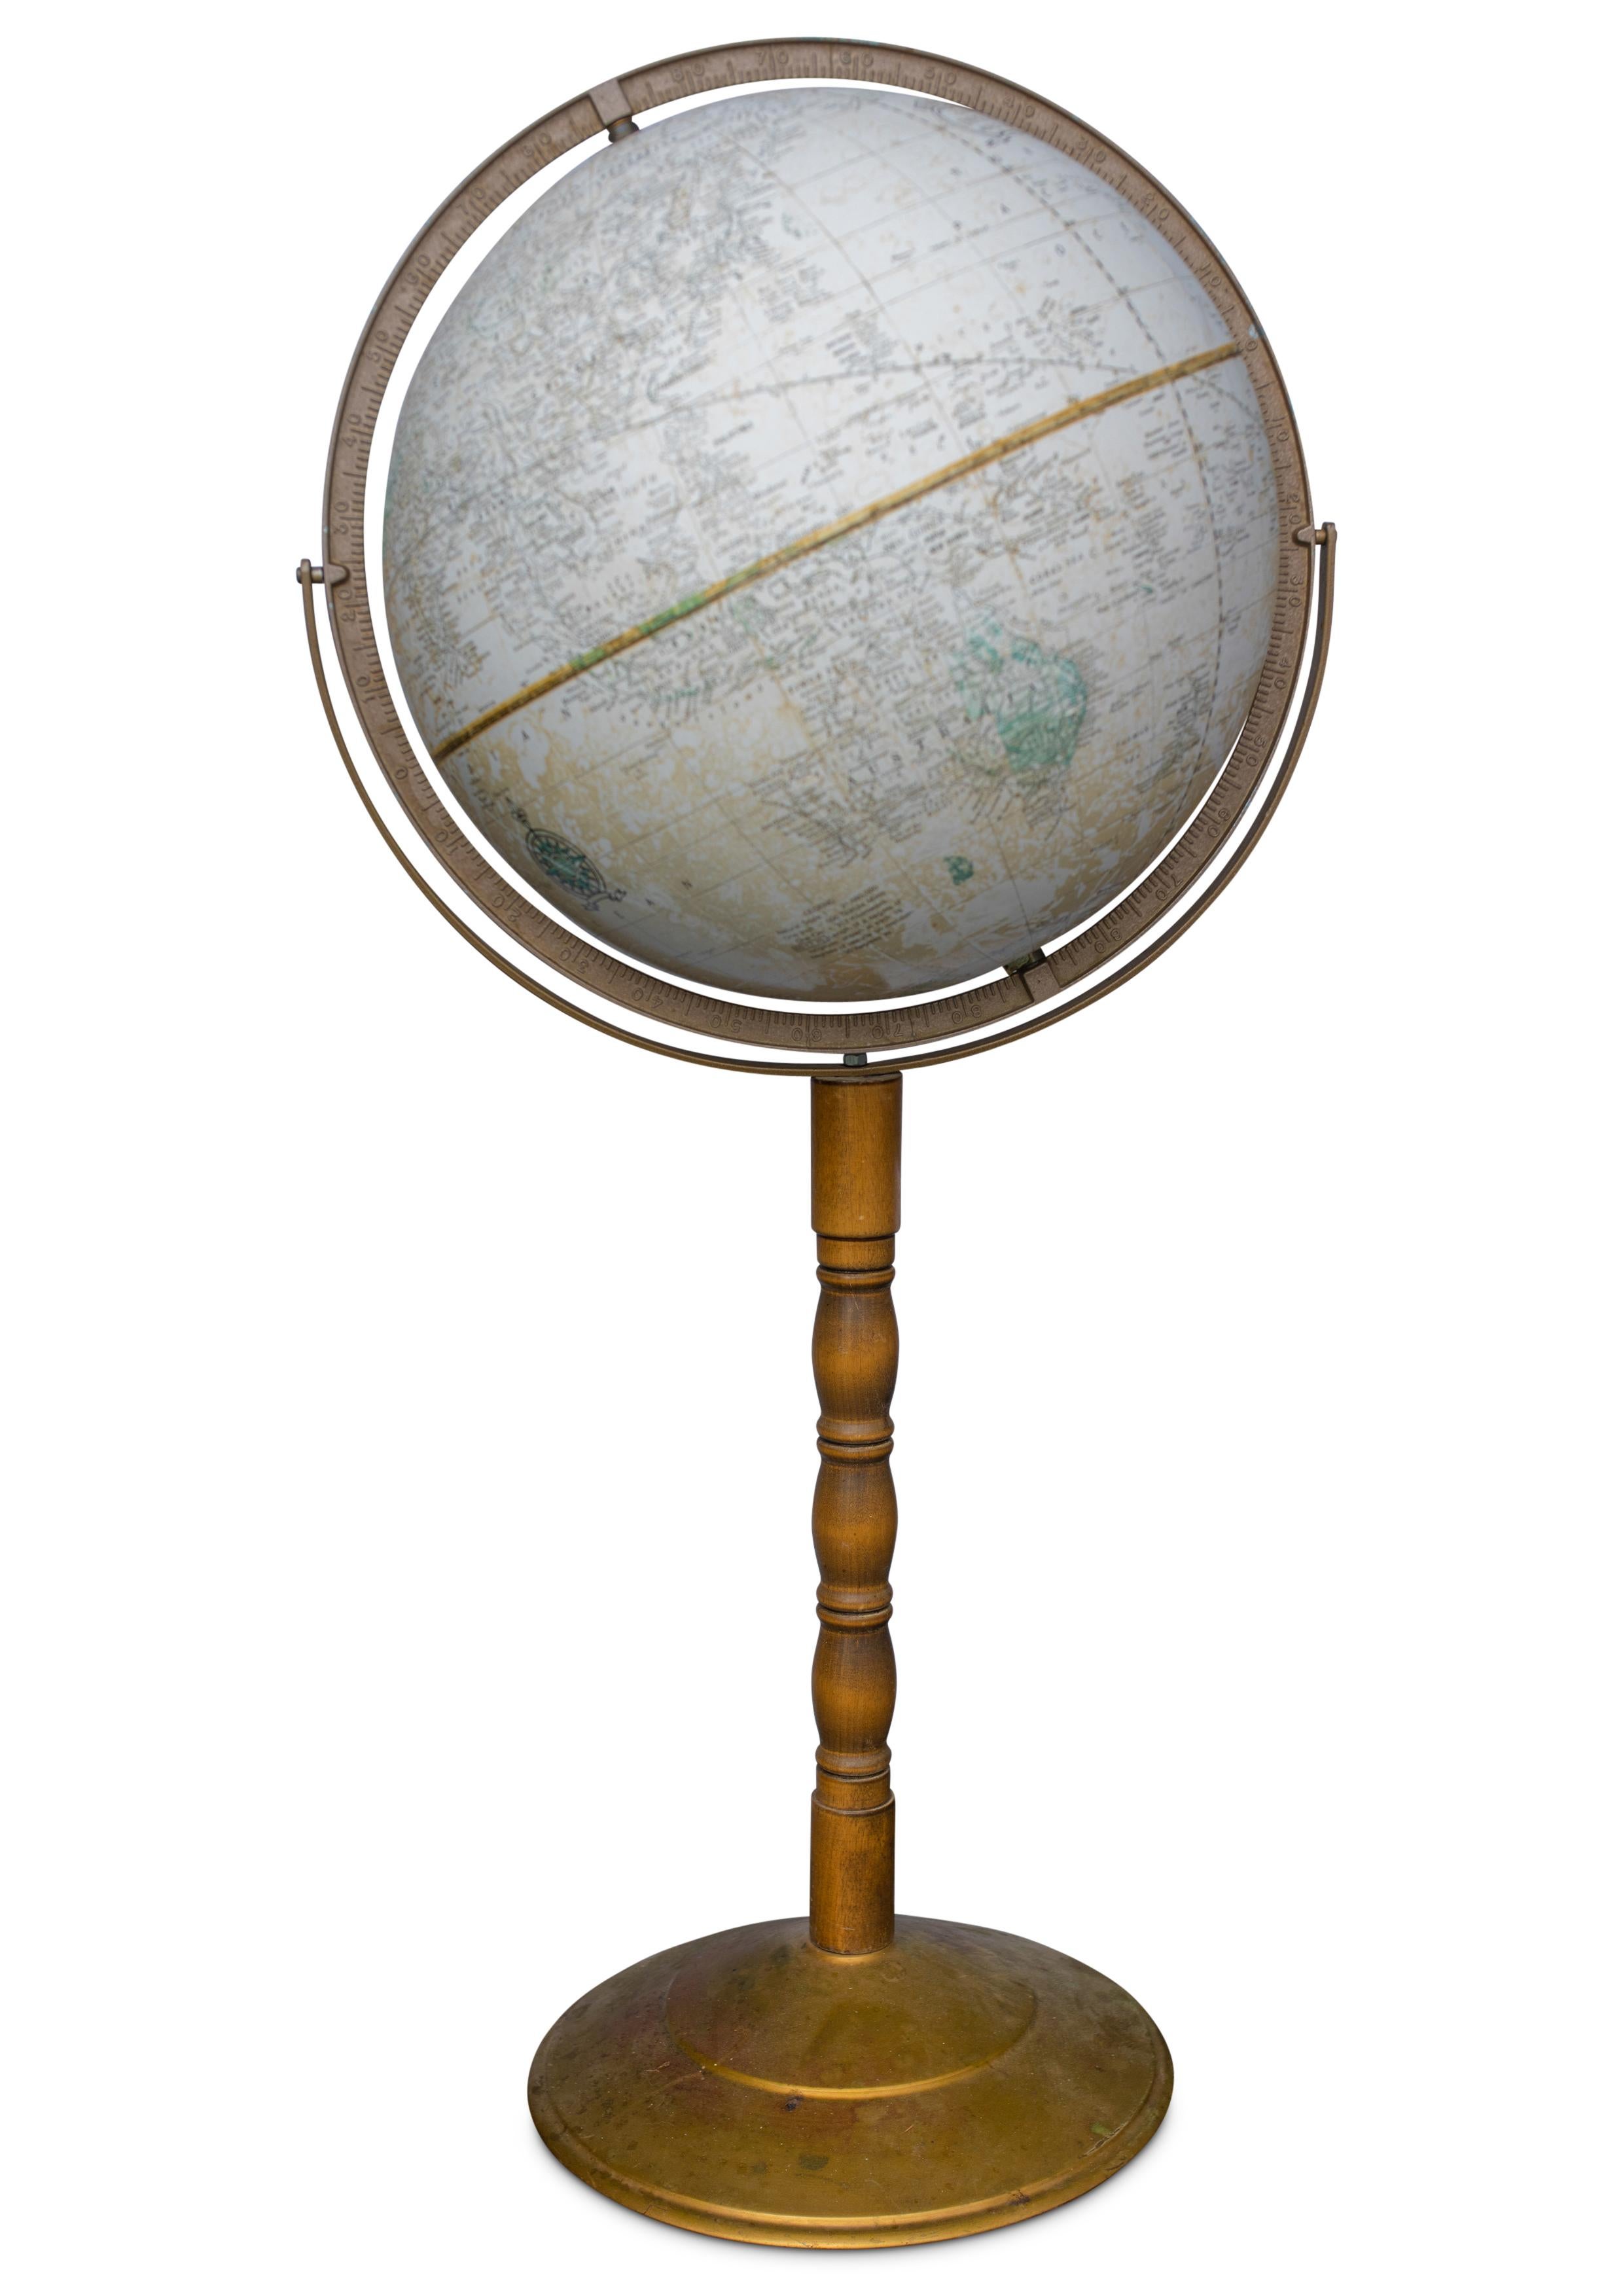 Crams Imperialer Weltglobus 

Bodenstehender Globus auf einem gedrechselten Stand aus Hartholz und Messing Modell Nr. 16 

Hergestellt von George F Cram's Co. Indiana, U.S.A

Größen sind Schätzungen